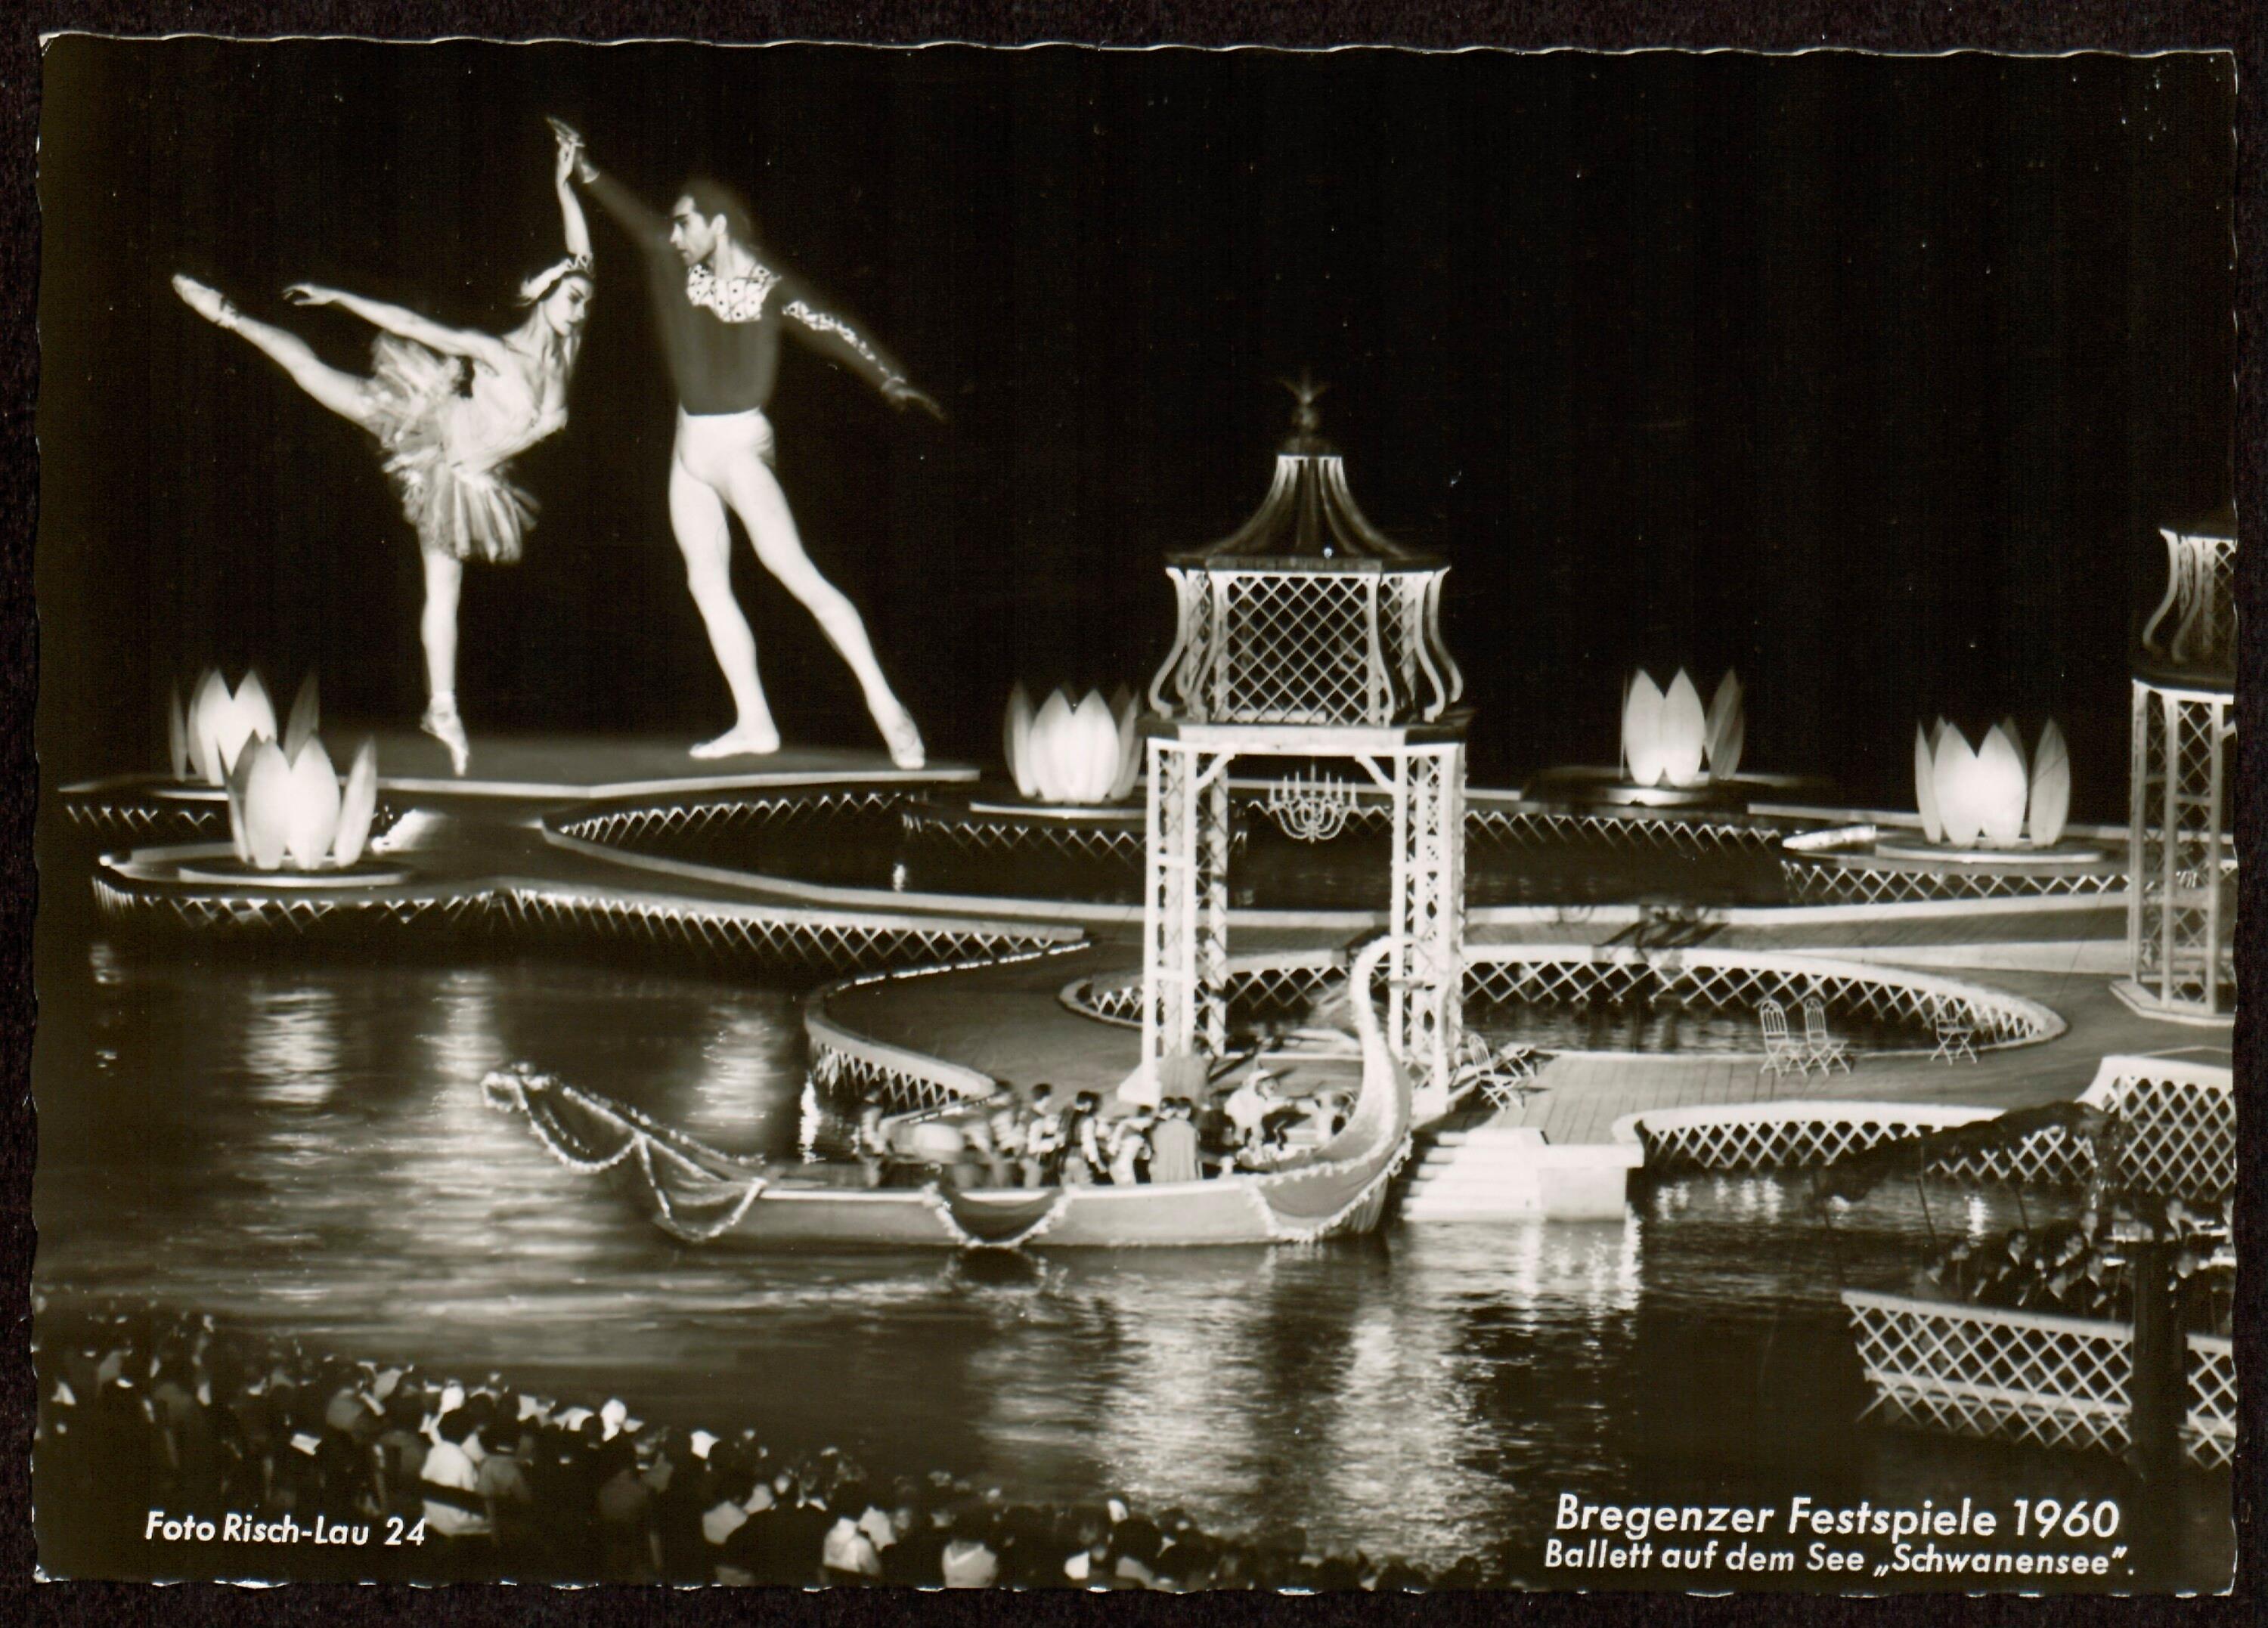 Bregenzer Festspiele 1960></div>


    <hr>
    <div class=